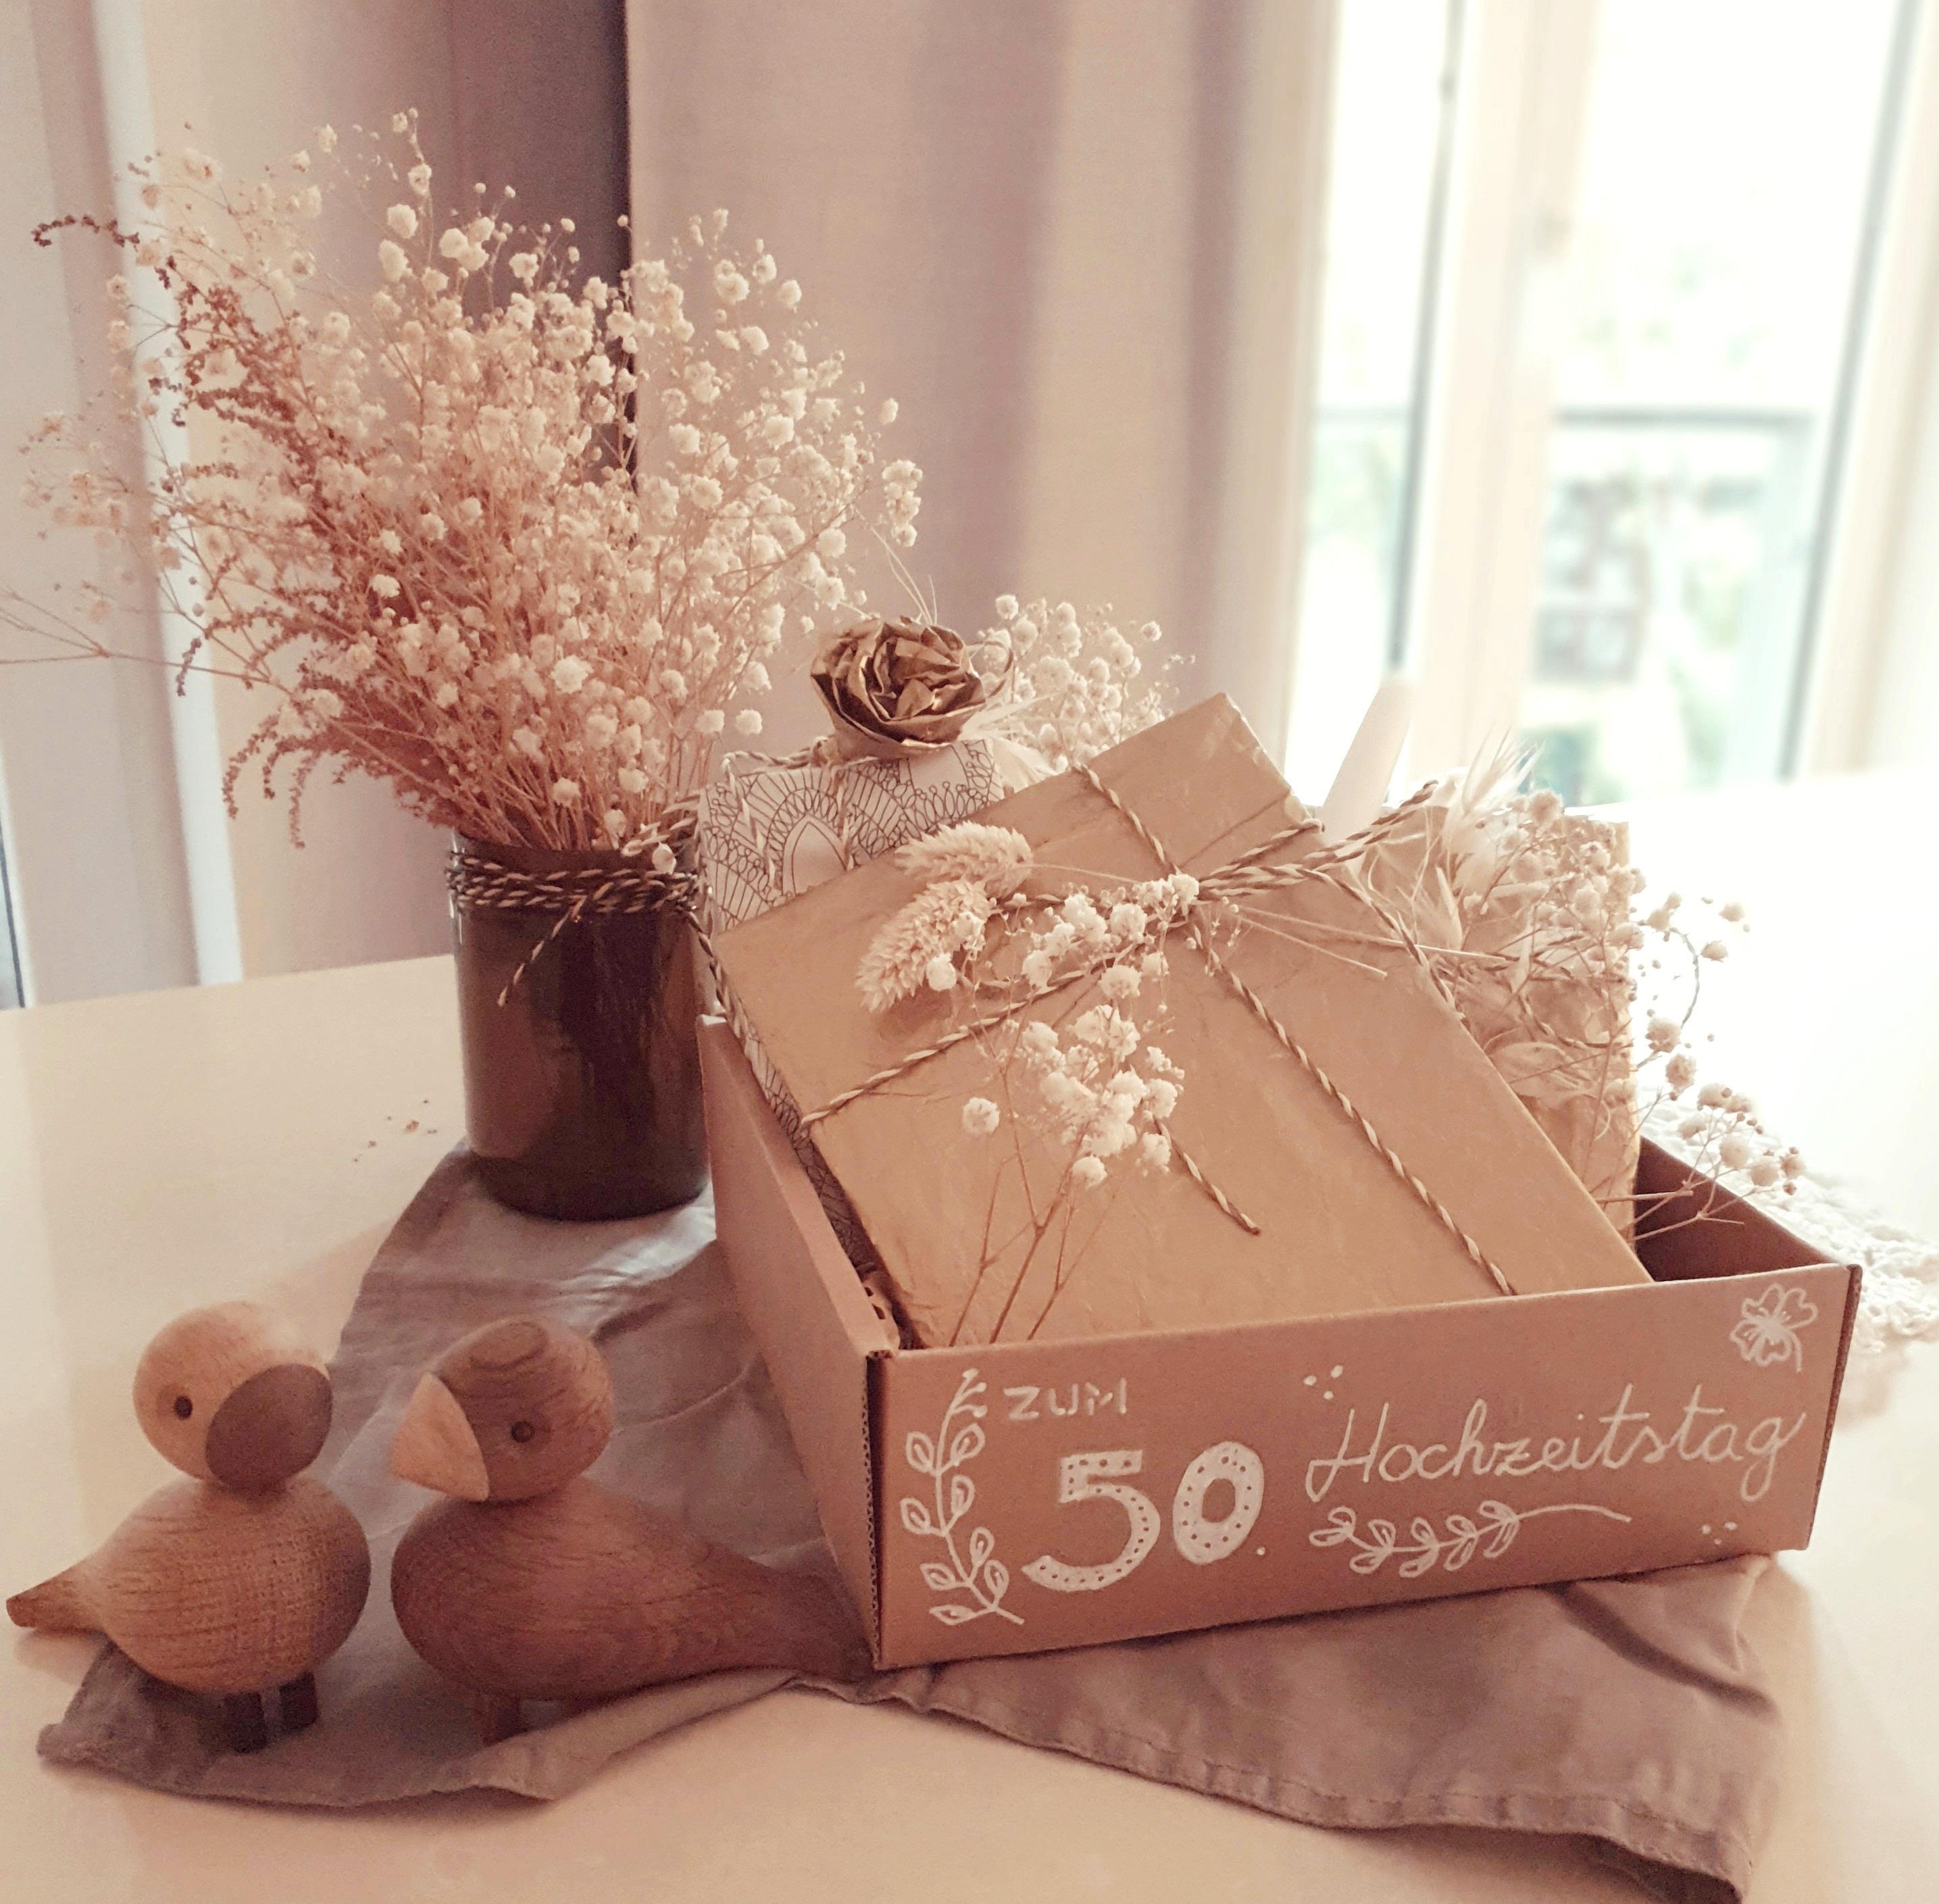 Mit Liebe 💕 verpackt, mit Freude verschenkt! #hochzeitstag #geschenkeverpackung #geschenke #trockenblume #gold